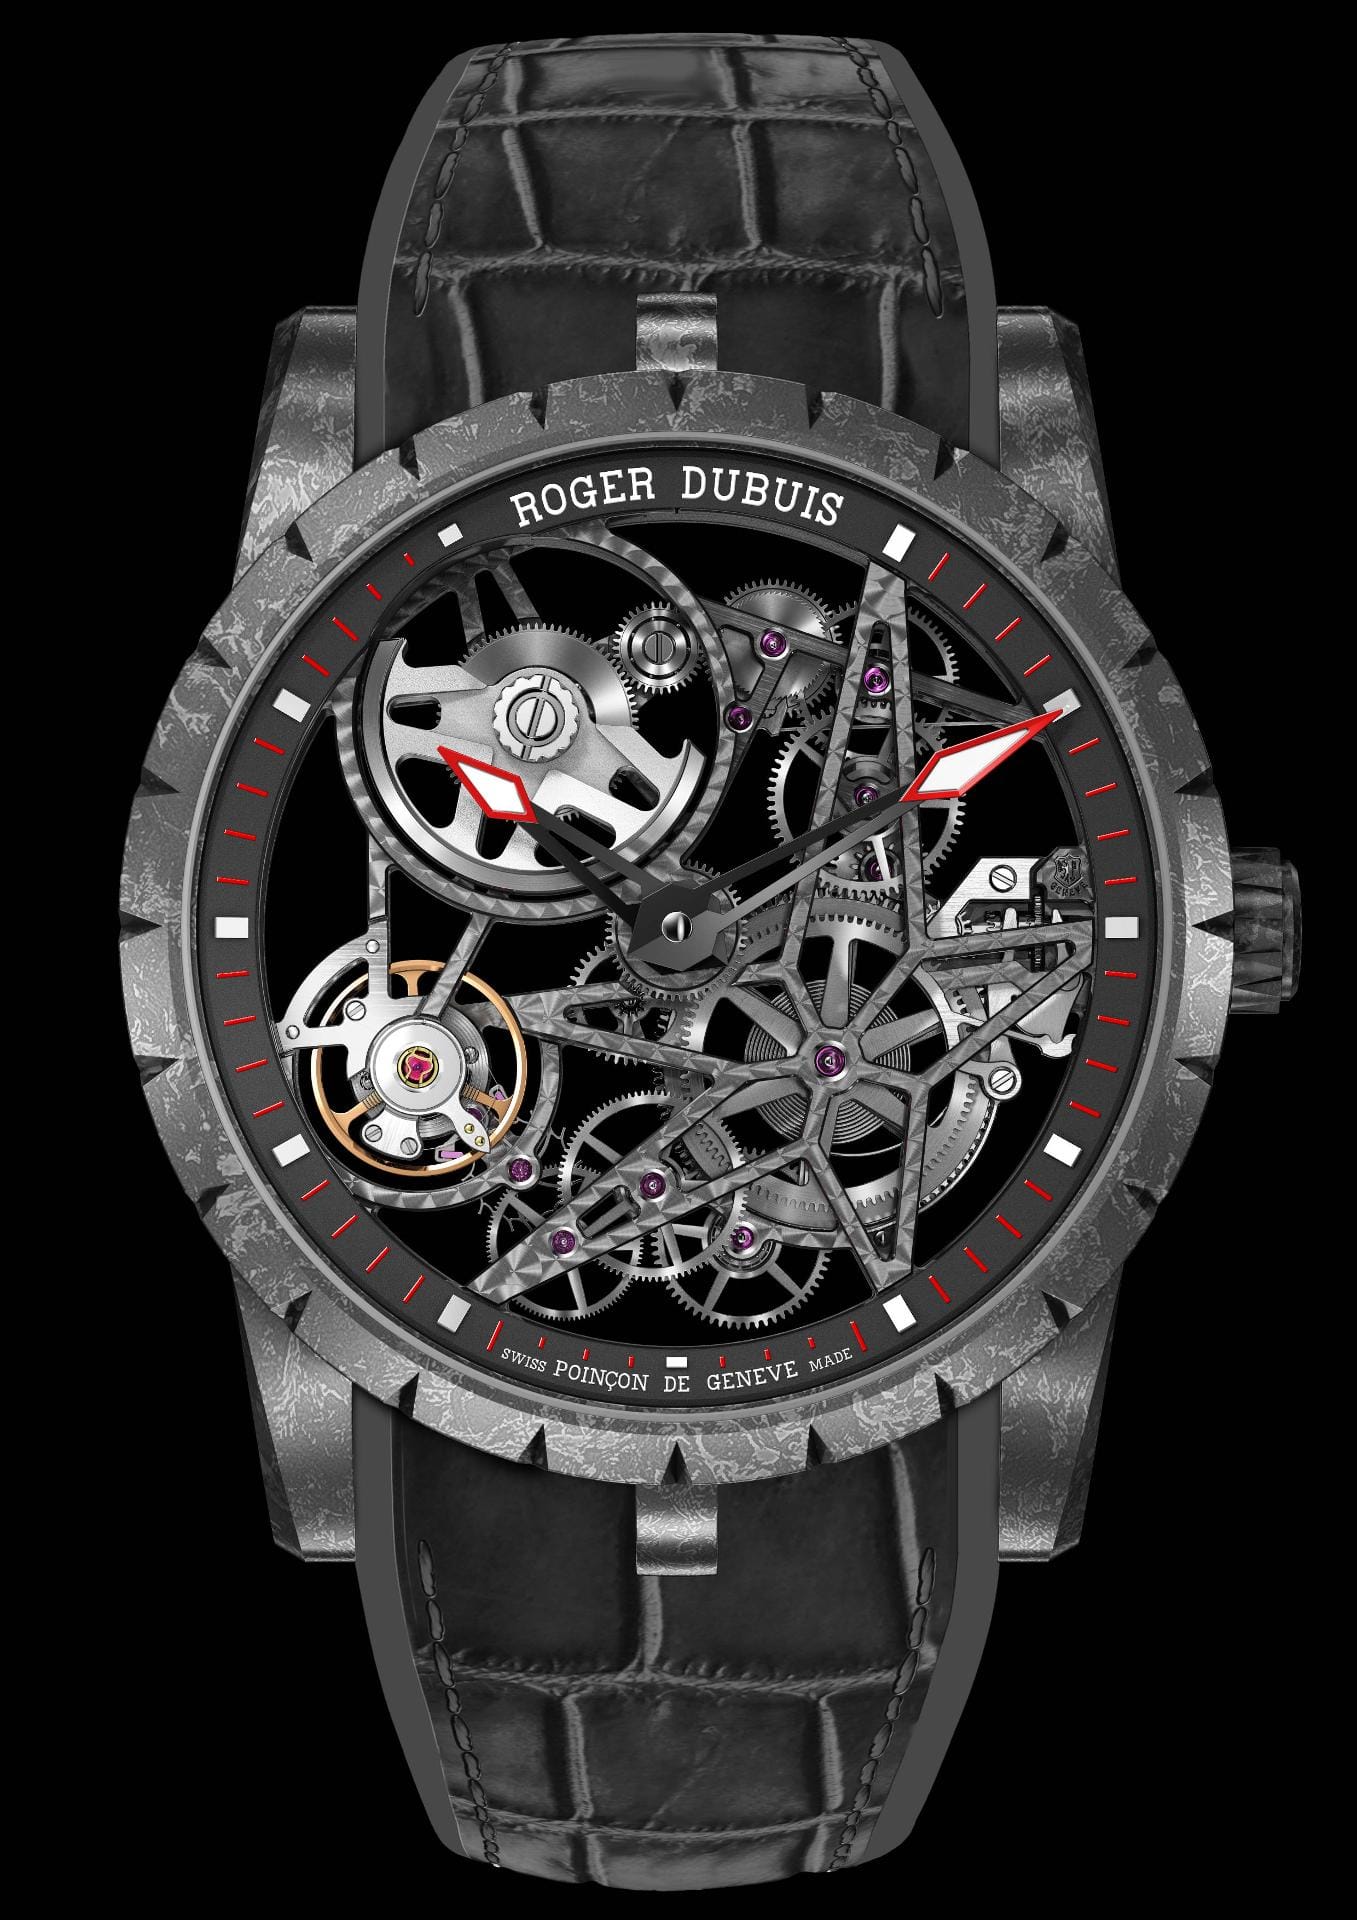 Ein Hingucker ist die Excalibur Automatik Carbon von Roger Dubuis, die auf der SIHH 2016 gezeigt wurde. Sie ist eine Neuauflage des skelletierten Modells von 2015 - allerdings nun mit dem leichten Hightech-Werkstoff Karbon. Rund 70.000 Euro kostet die Uhr.